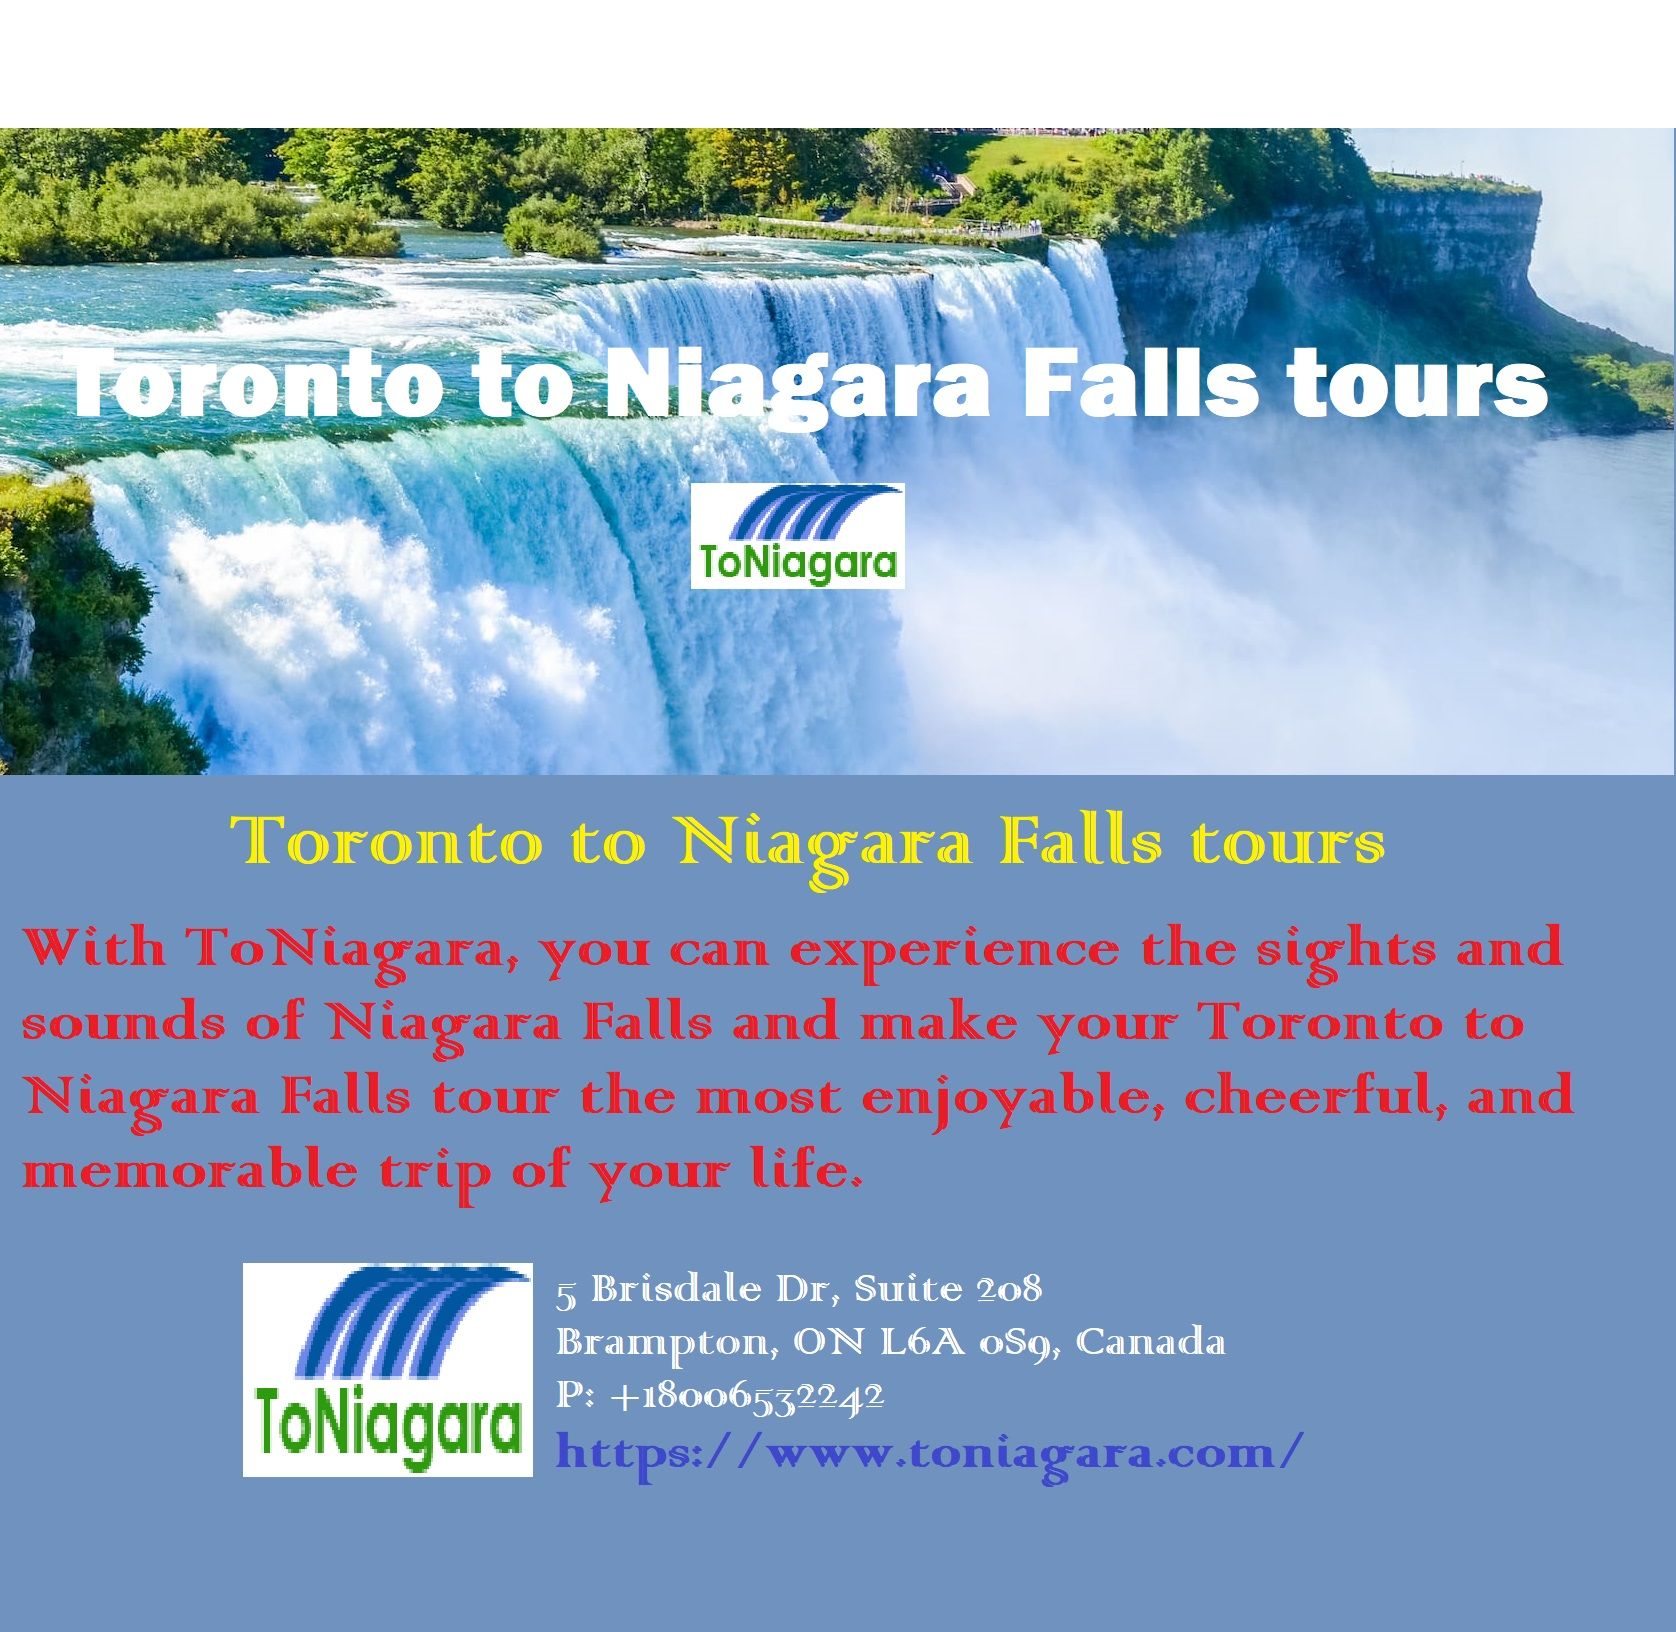 Toronto to Niagara Falls tours